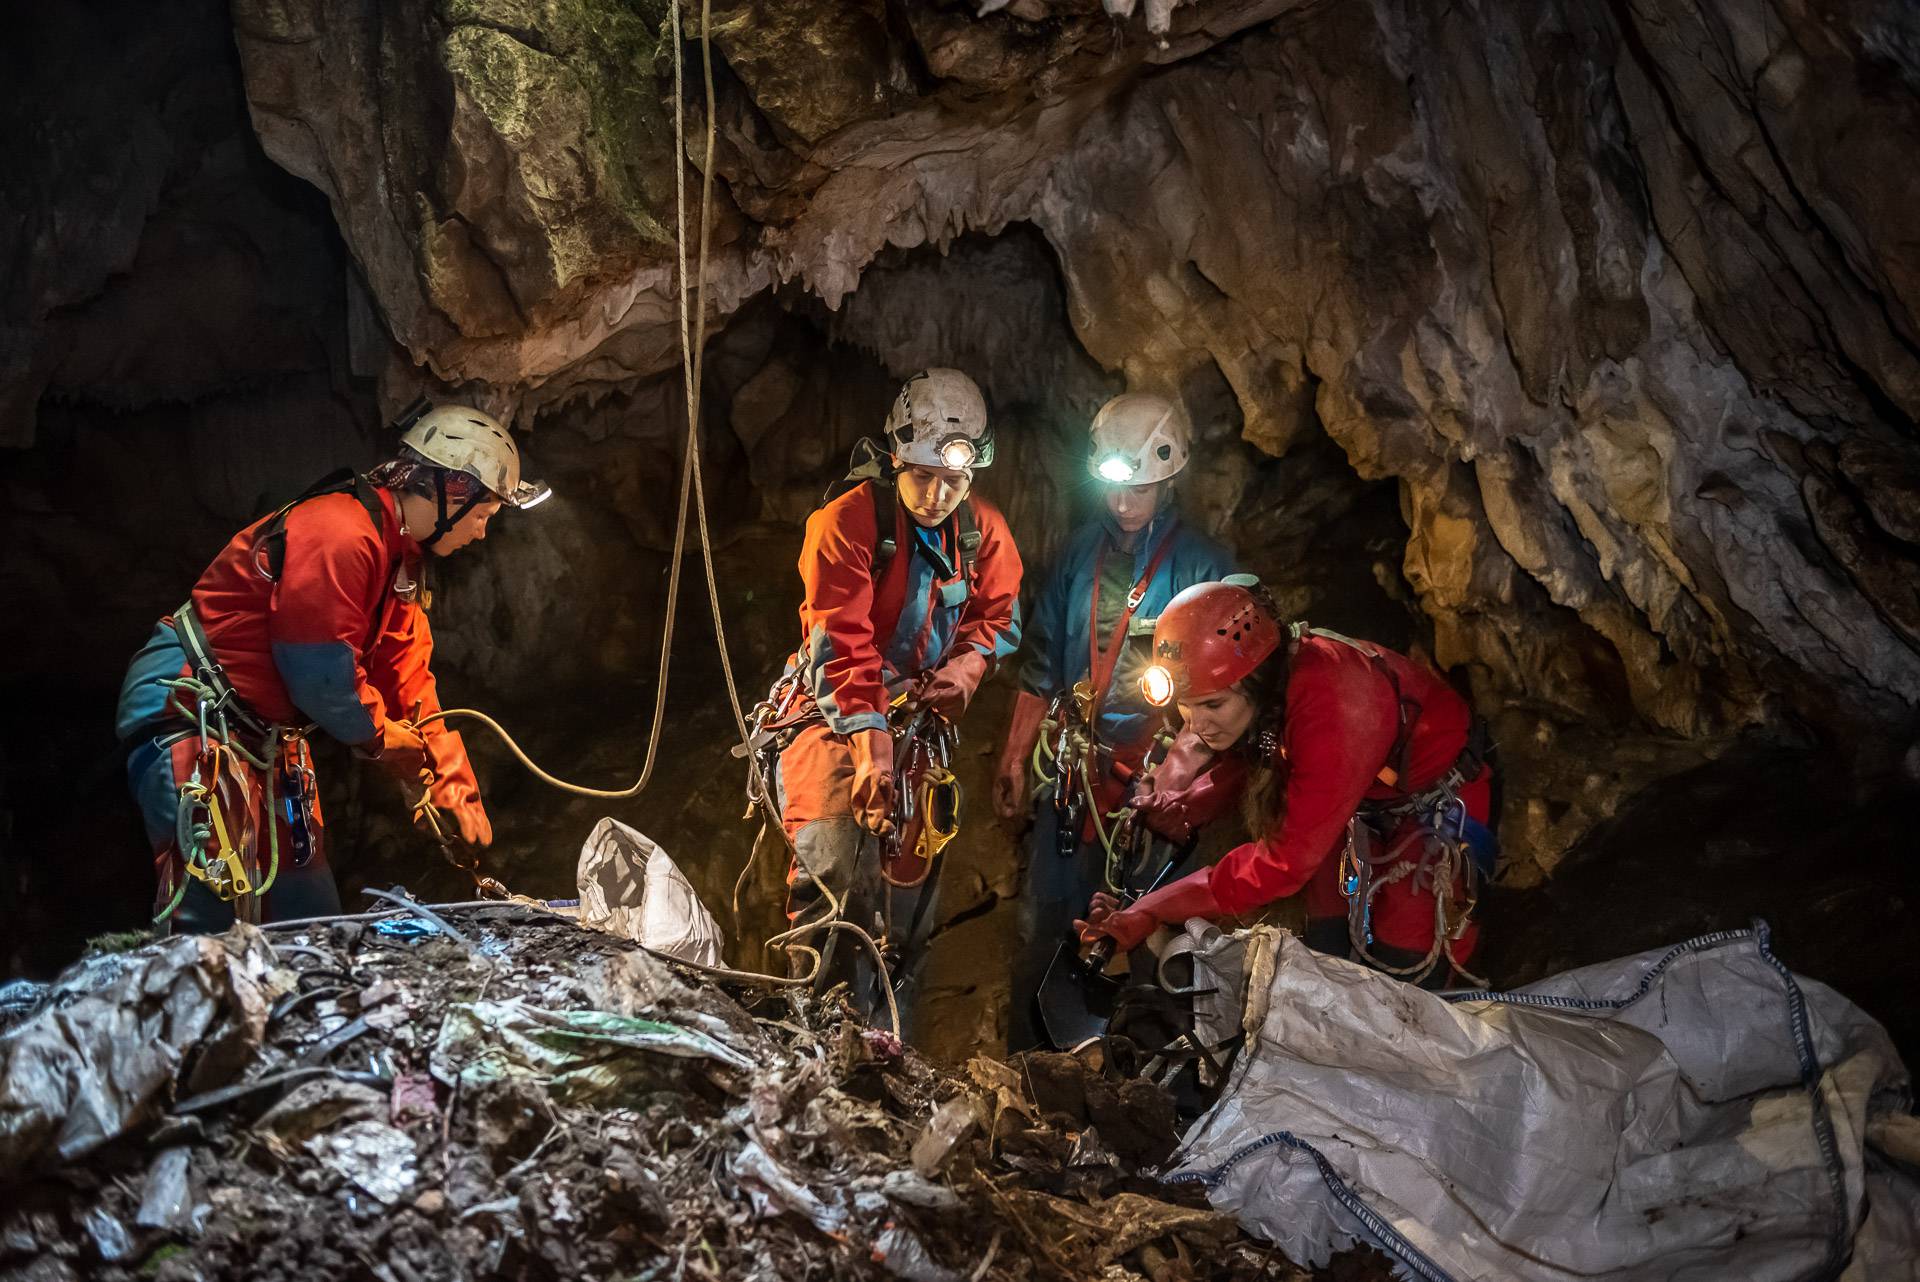 Speleolozi iz šest  jama i špilja diljem Hrvatske izvukli su čak 25 kubika kućanskog otpada